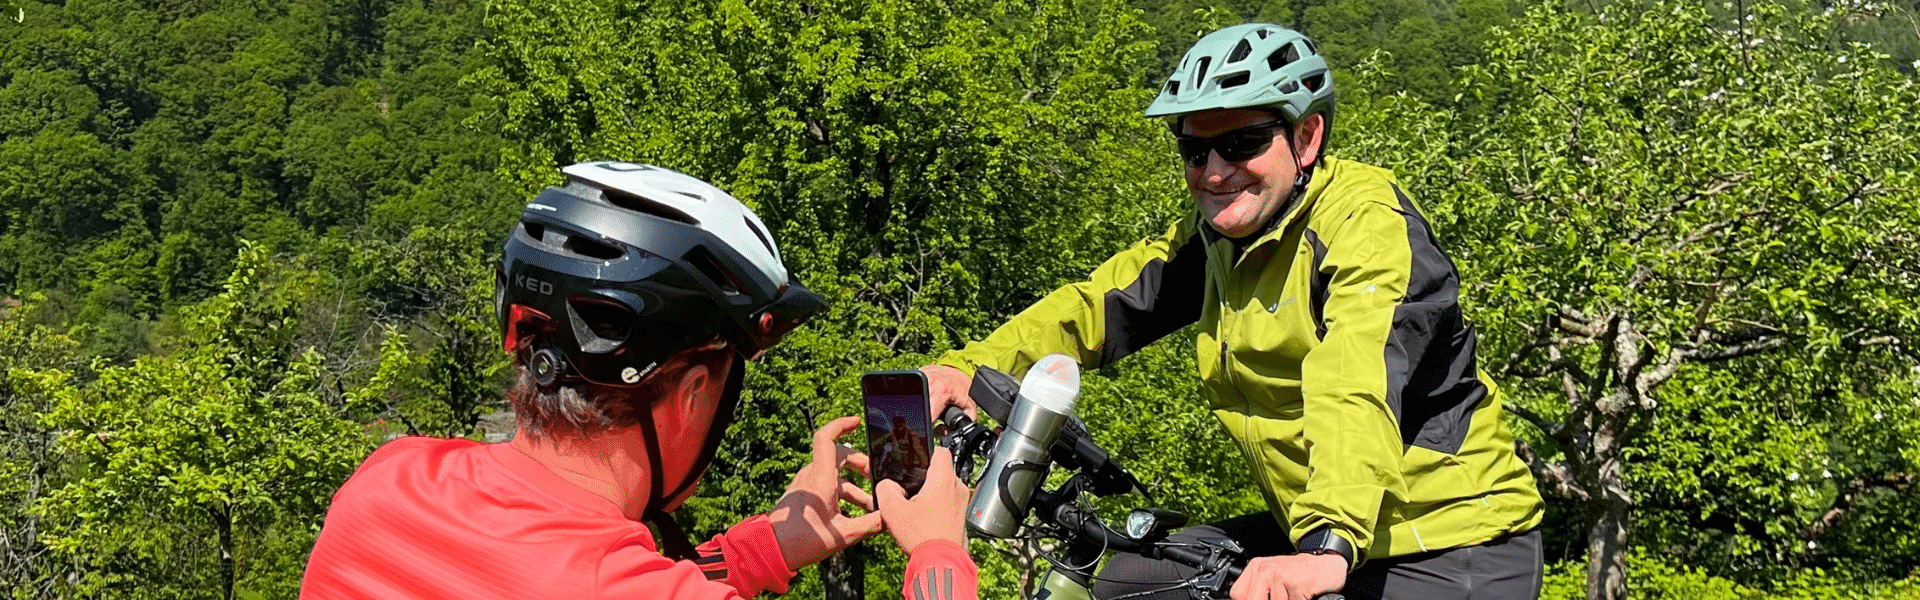 Ride4NetZero: Nachhaltig unterwegs – mit dem E-Bike von Walldorf nach Davos